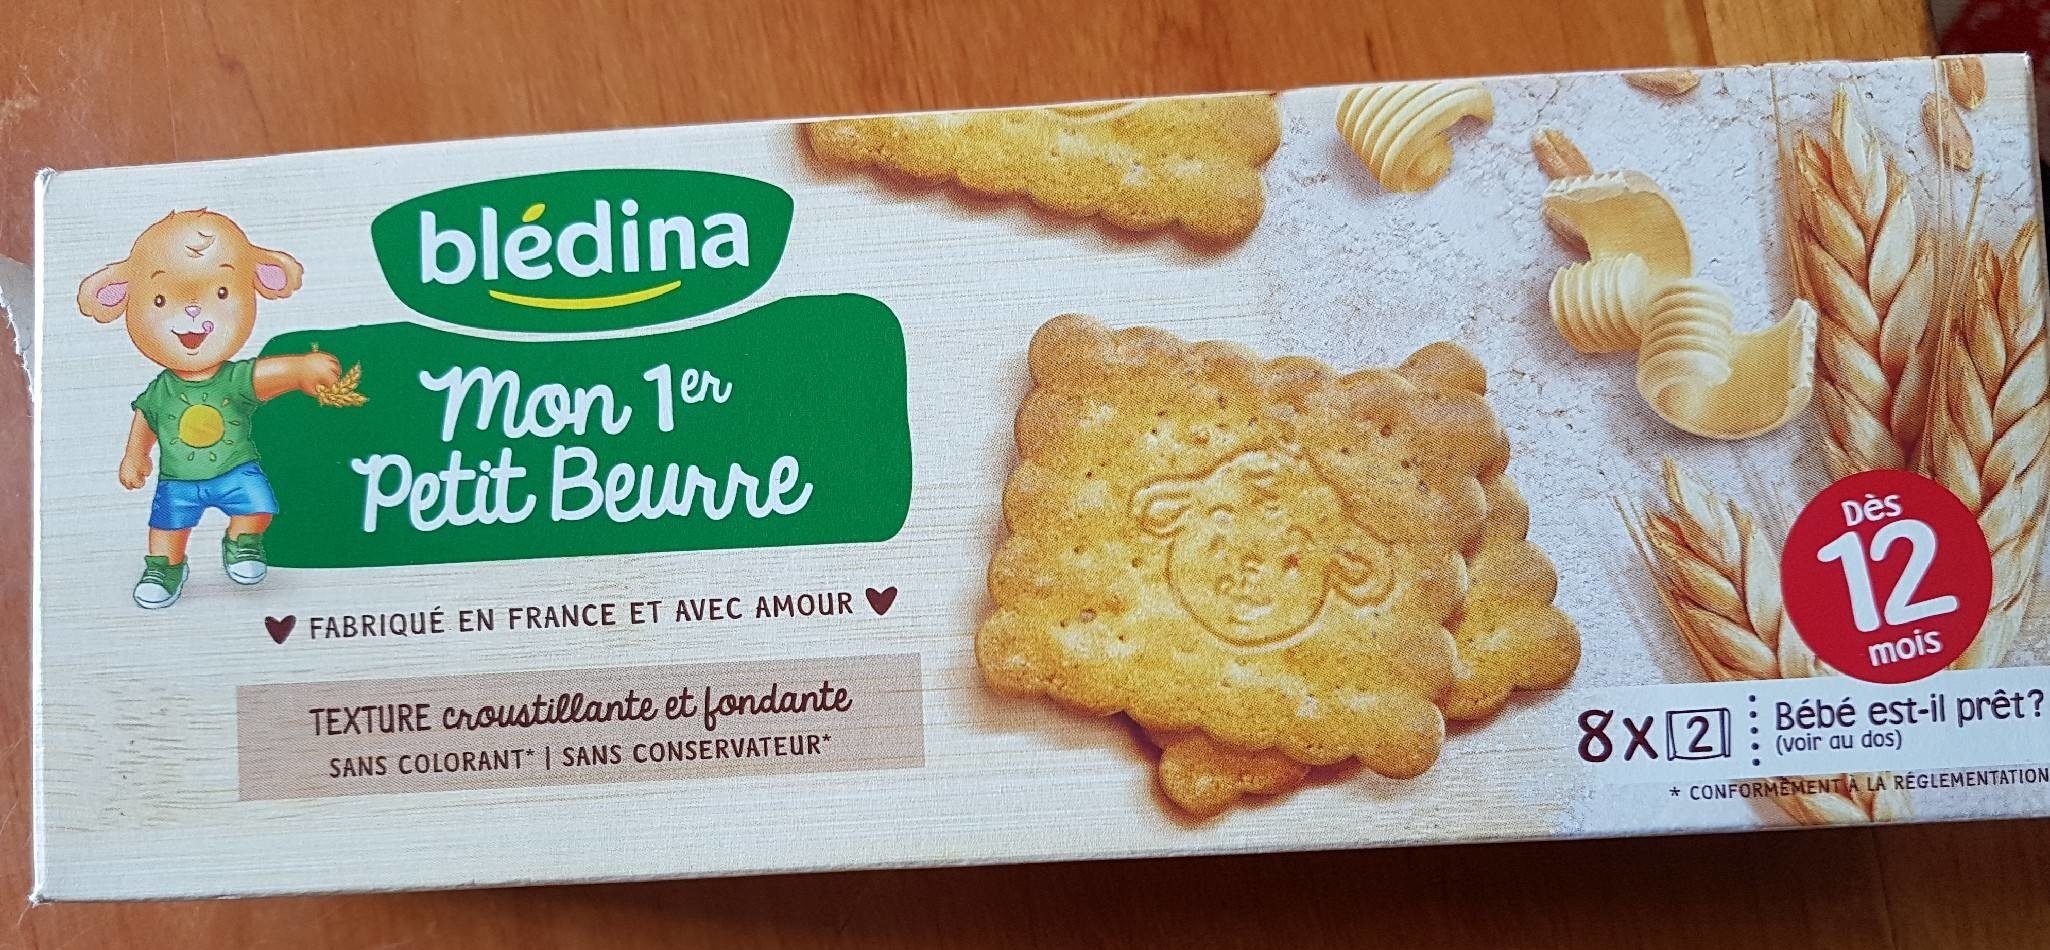 BLEDINA Mon Premier Petit Beurre 133g dès 12 mois - Product - fr